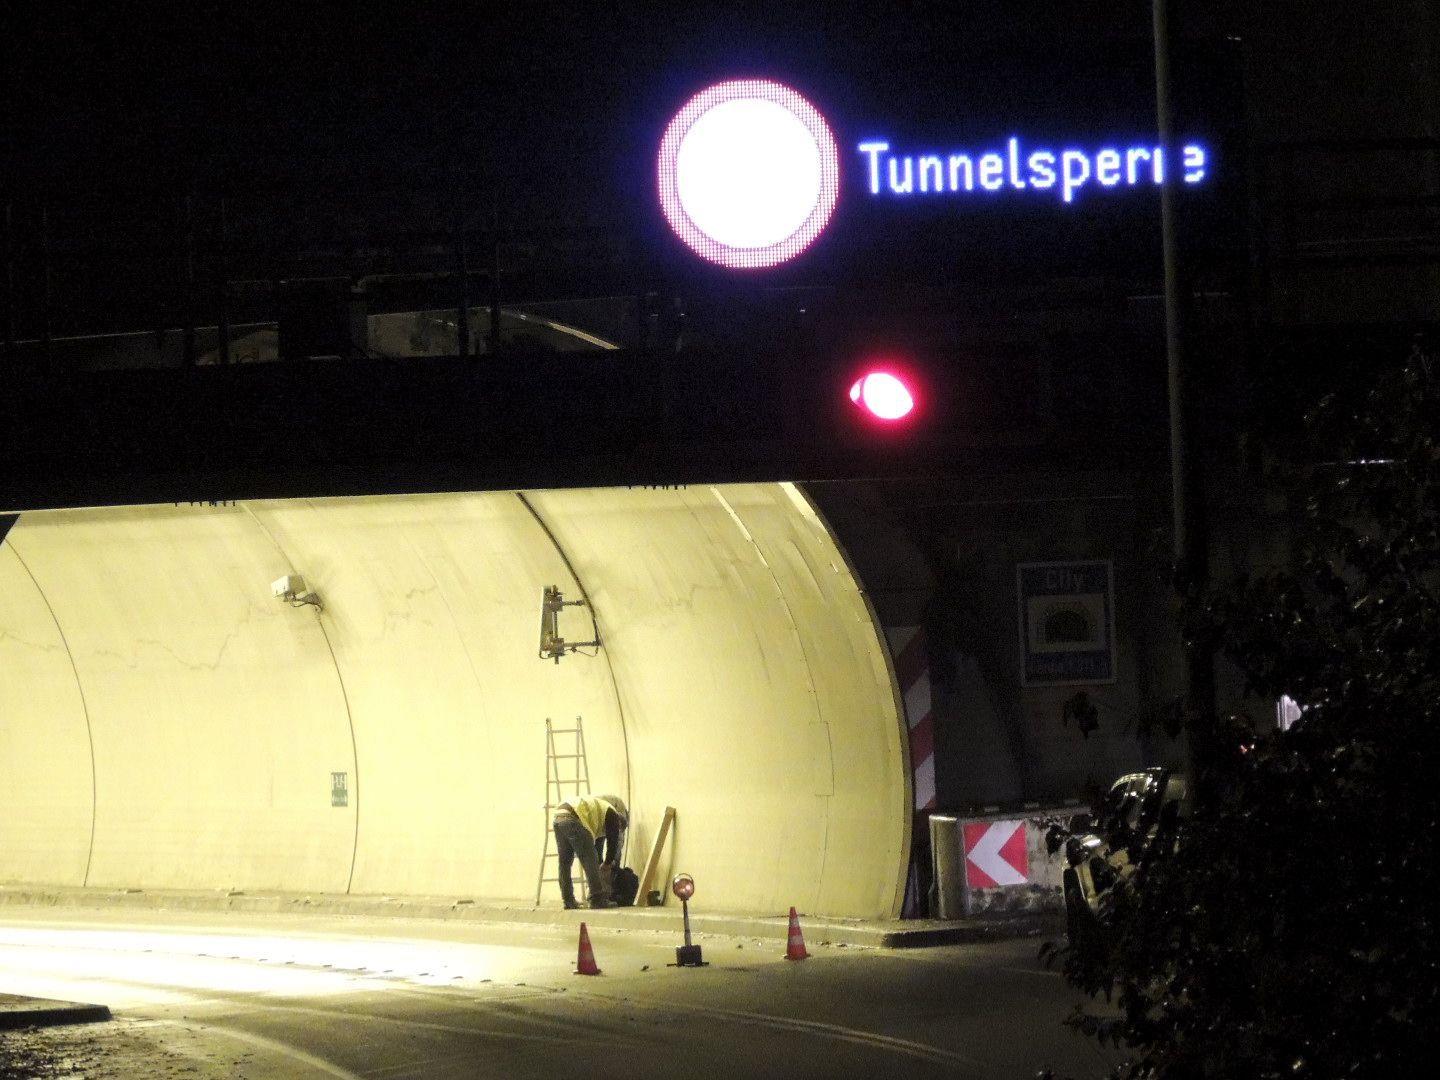 Tunnelsperre